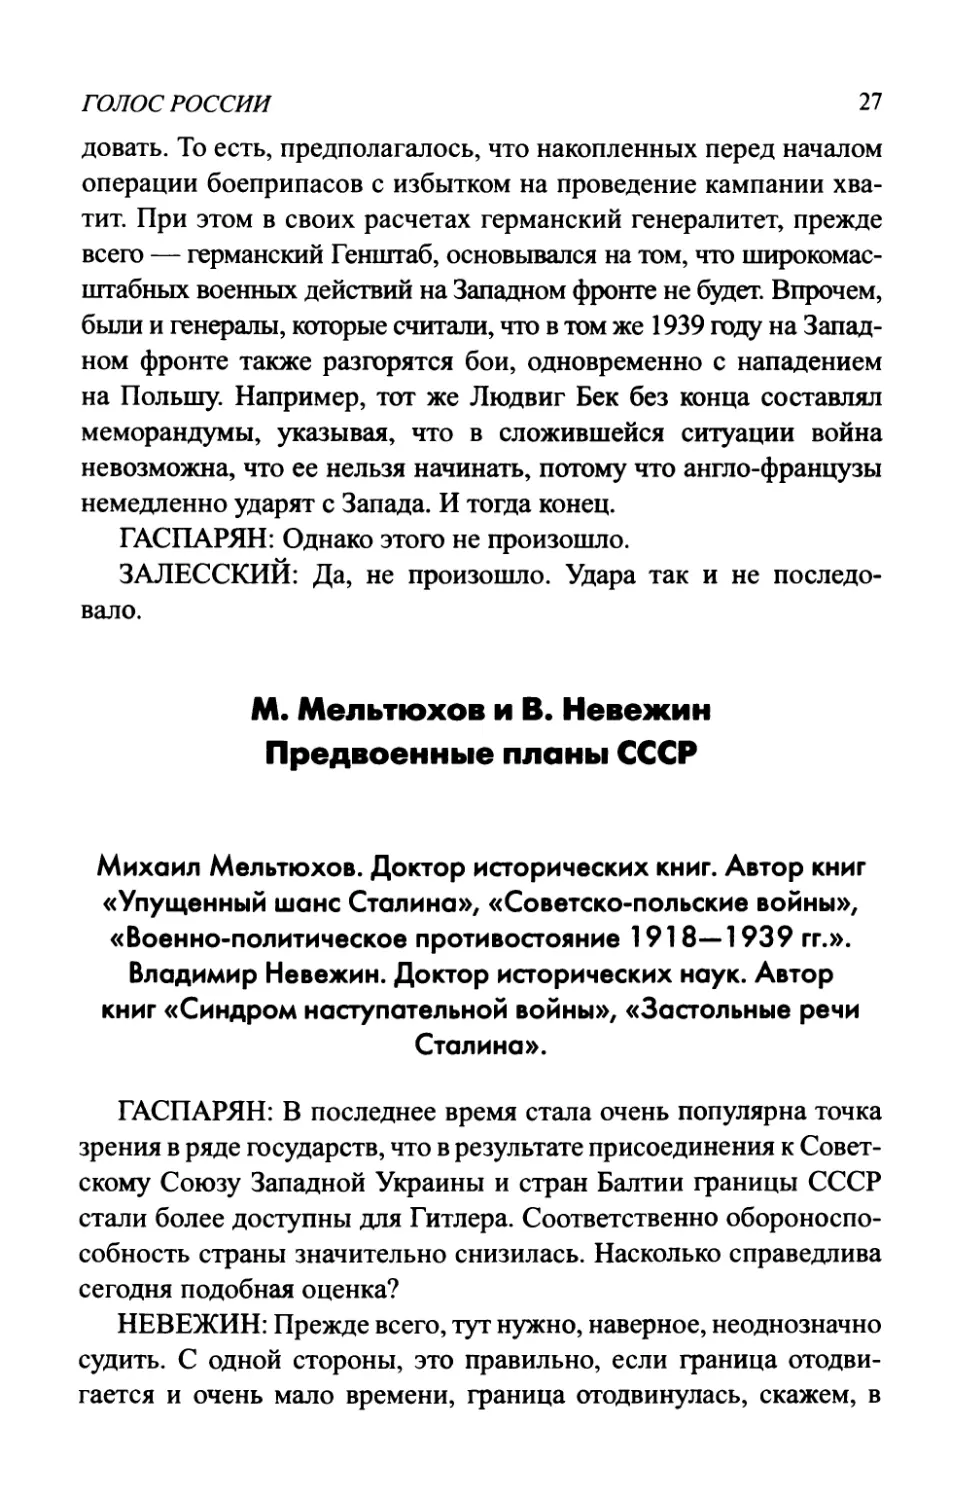 М. Мельтюхов и В. Невежин. Предвоенные планы СССР